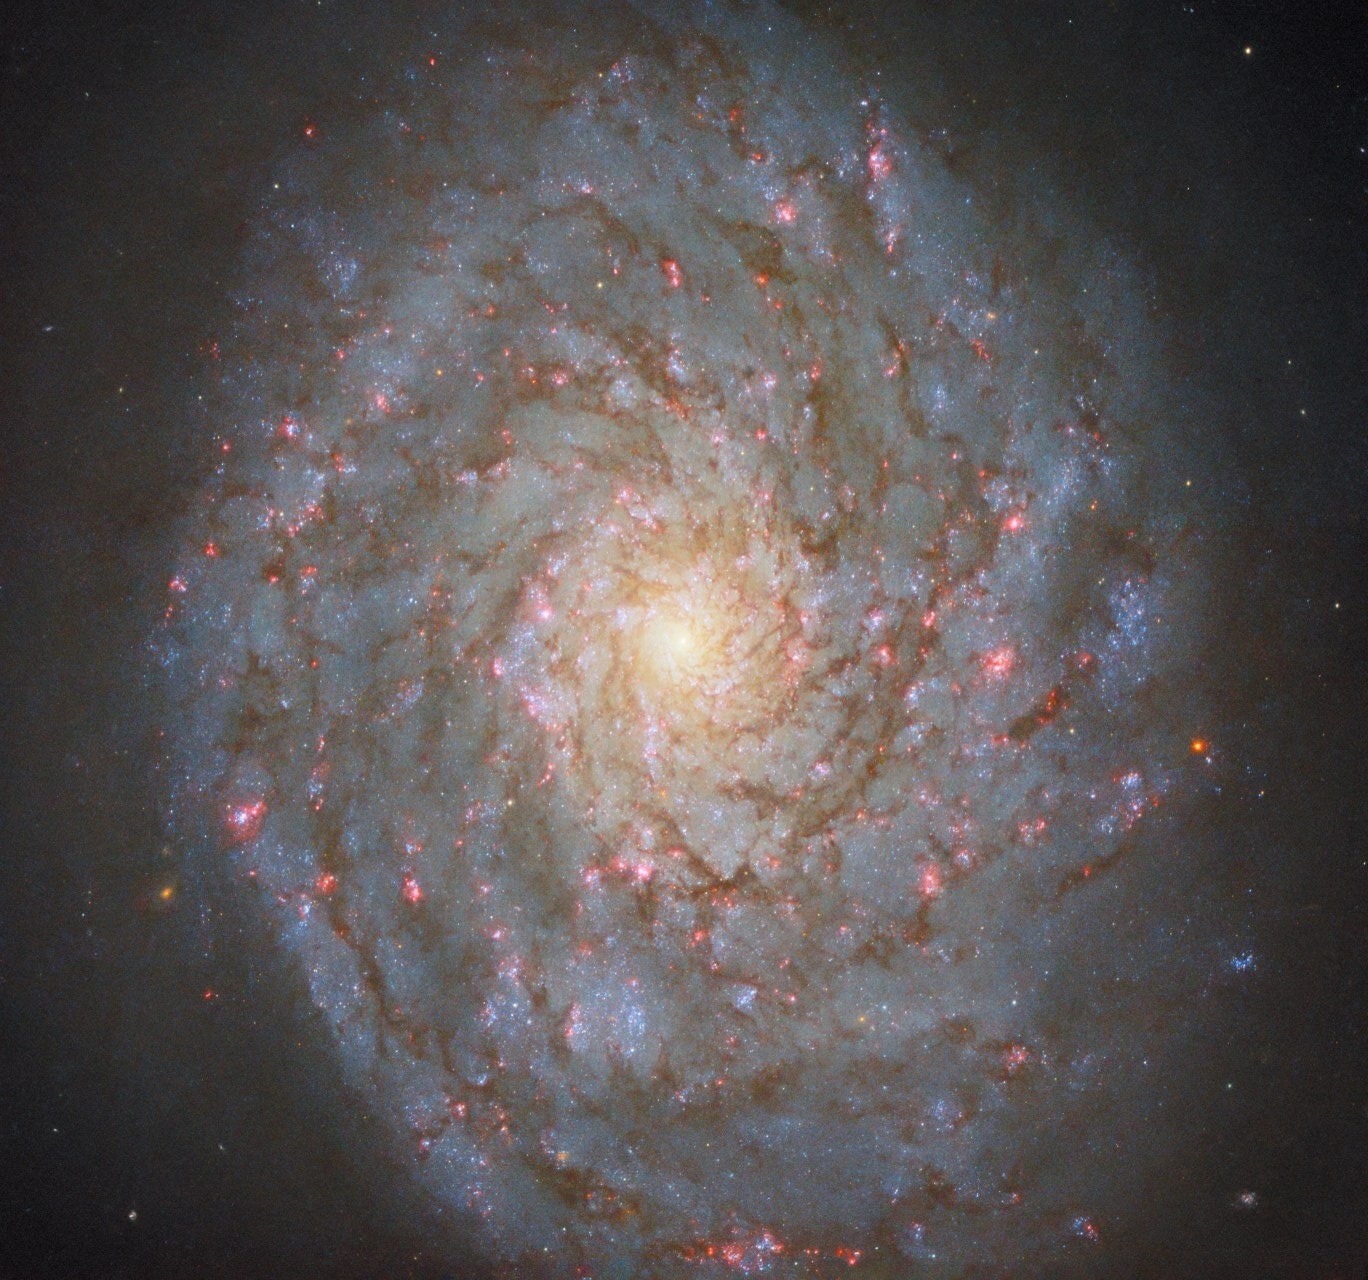 Ova fotografija snimljena Hubble svemirskim teleskopom prikazuje sjajnu spiralnu galaksiju NGC 4689. ESA/Hubble & NASA, D. Thilker, J. Lee i PHANGS-HST tim.